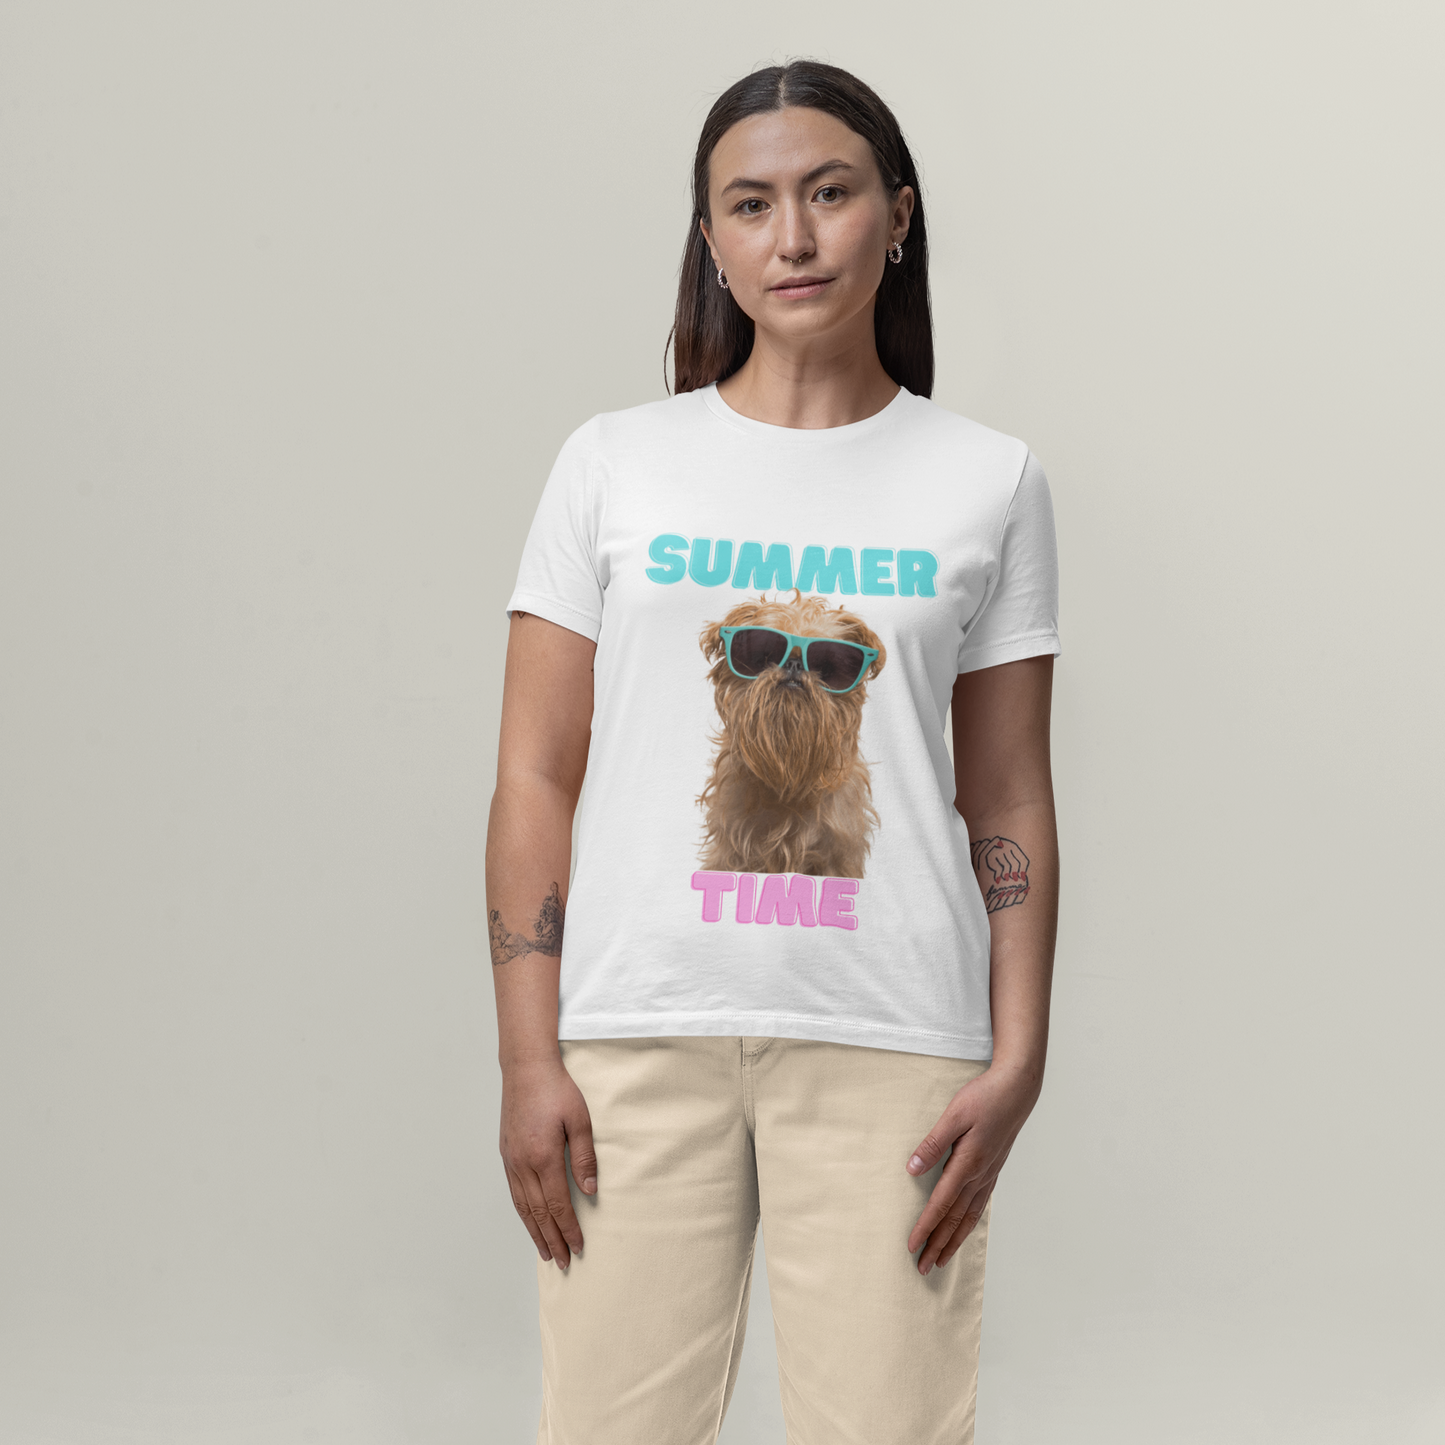 Dog "Sumer Time" - T-Shirt Unisex